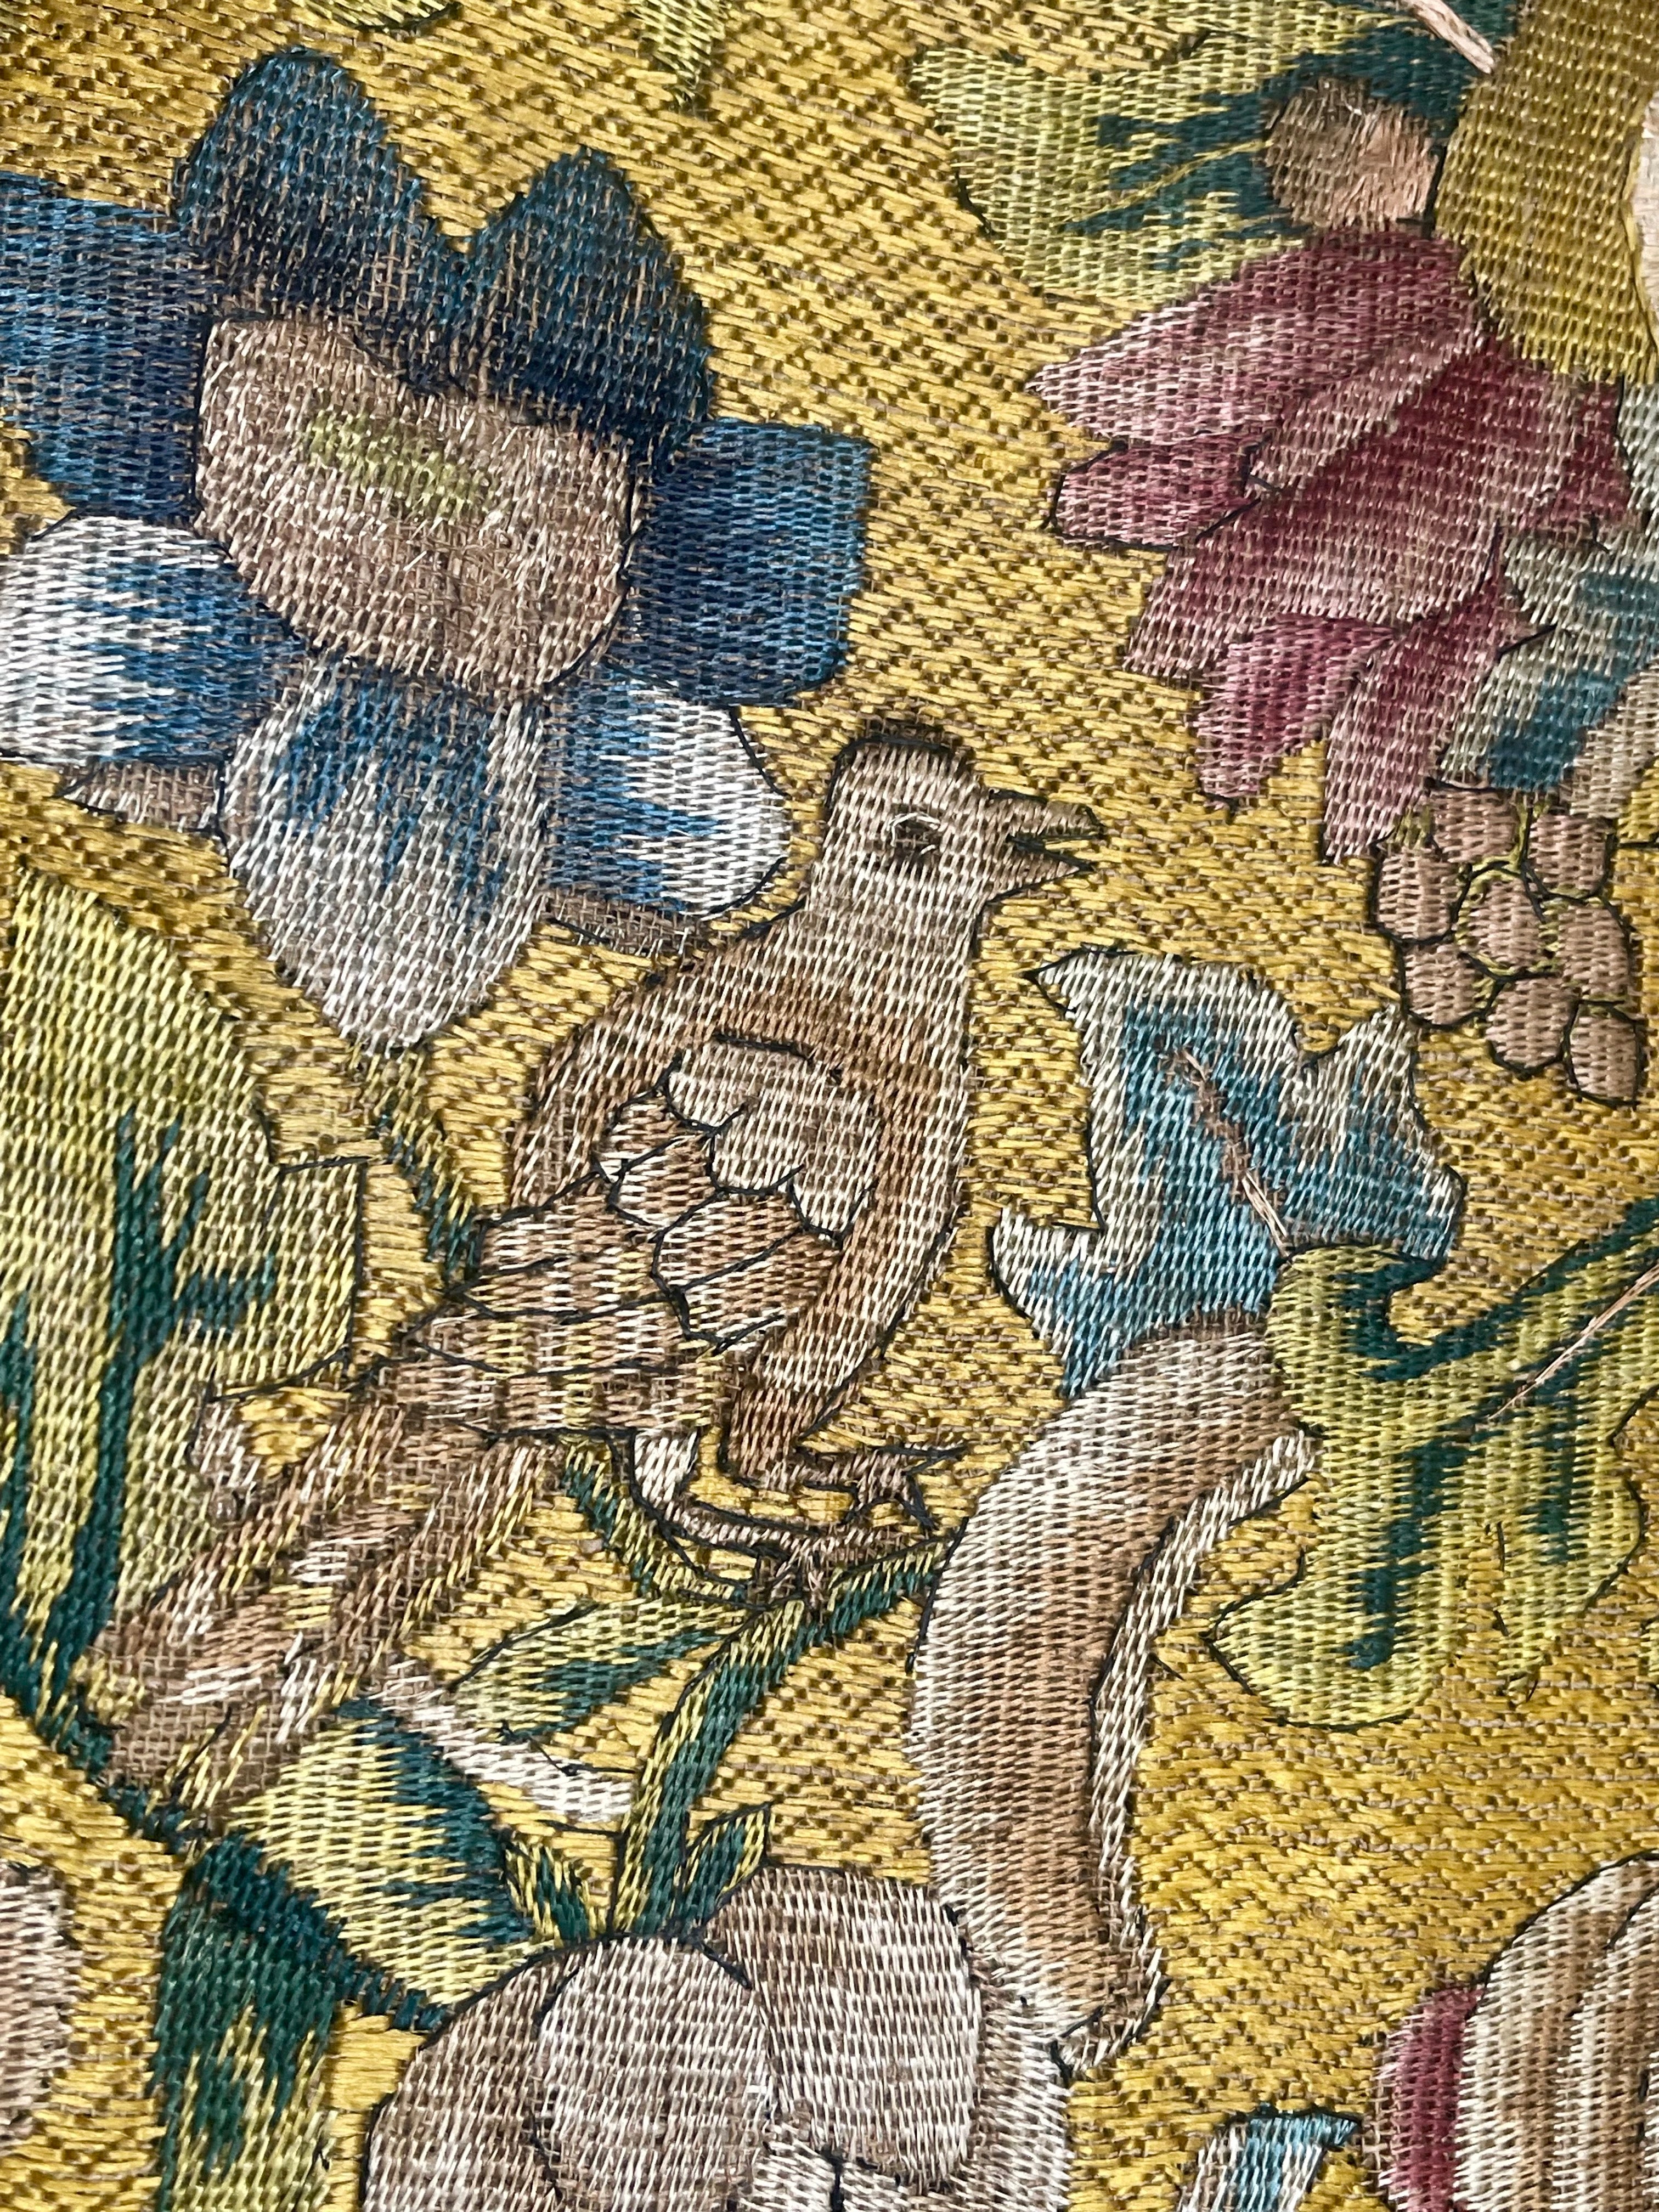 17th Century Italian Needlework Panel BIRDS